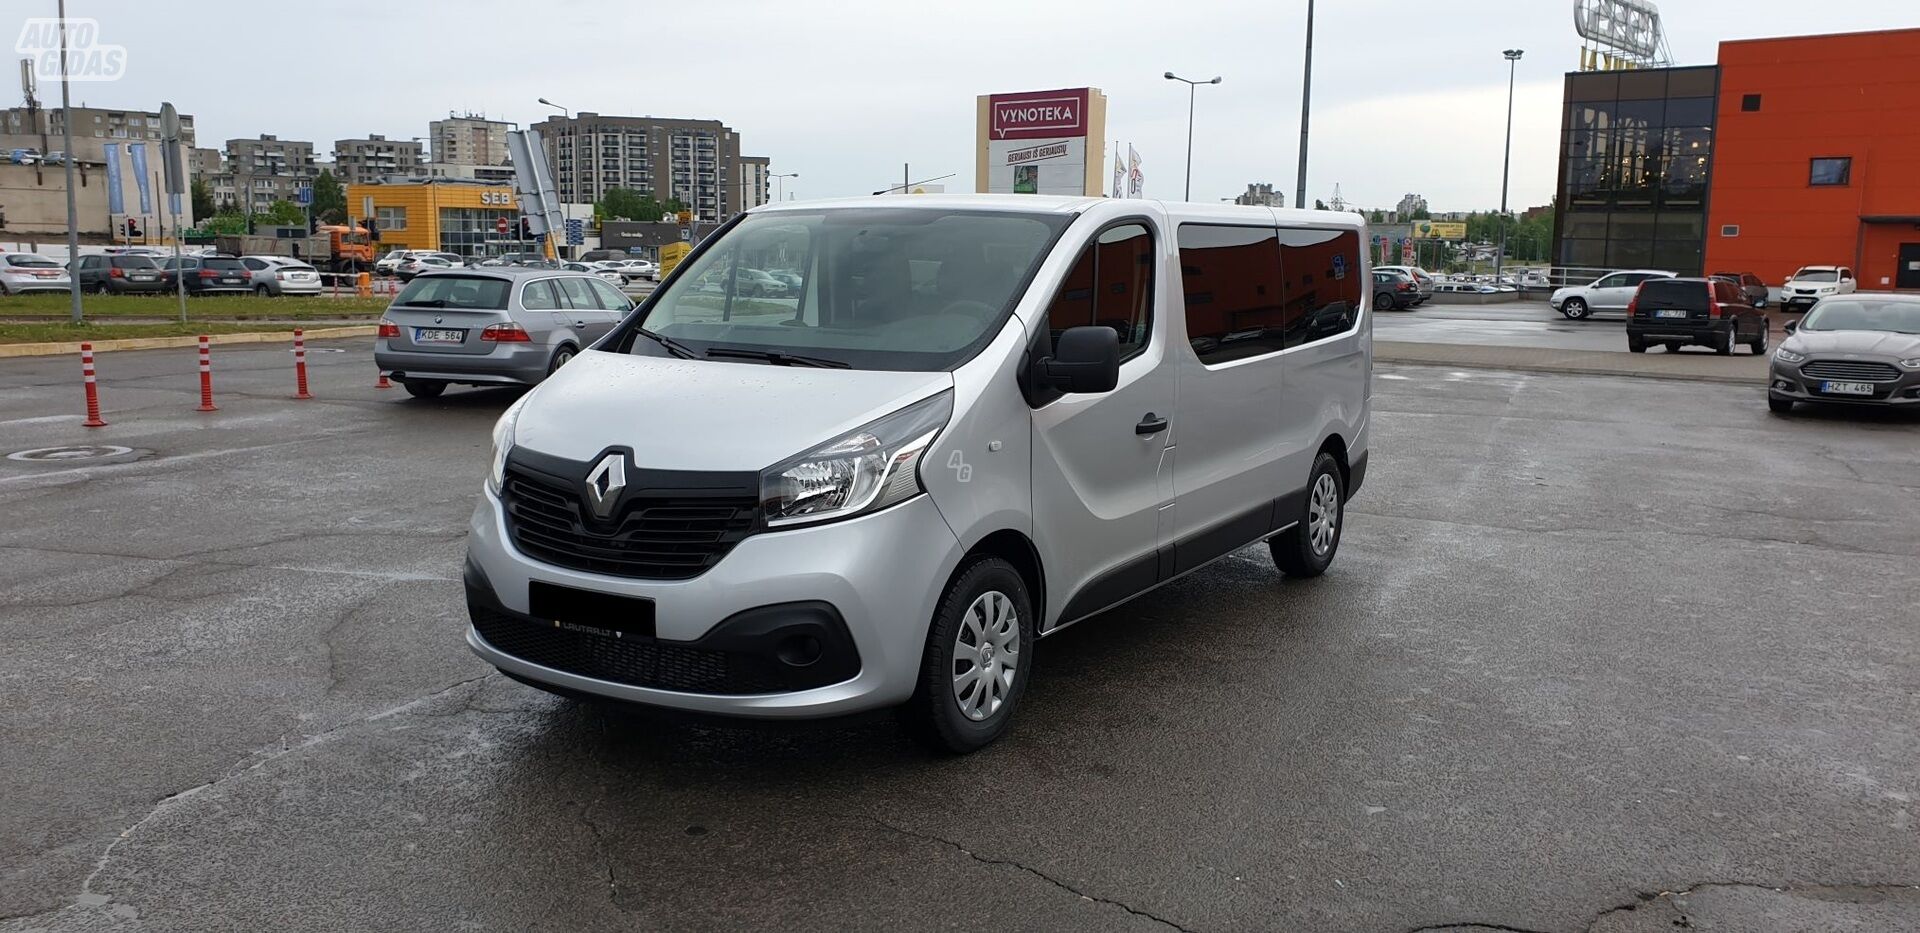 Renault Trafic 2019 y Minibus rent